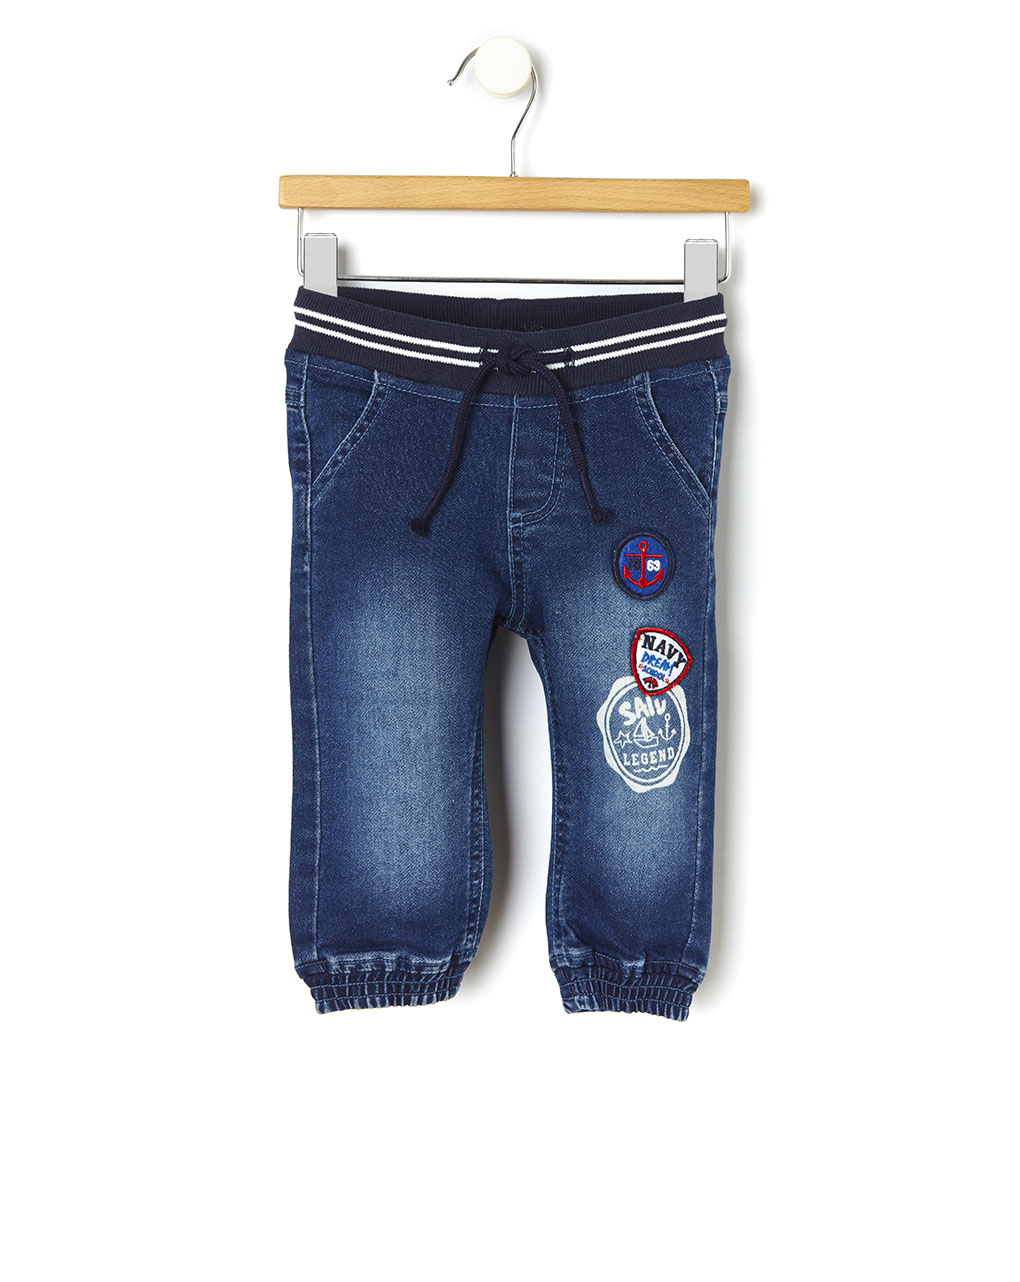 τζιν παντελόνι με patch για αγόρι